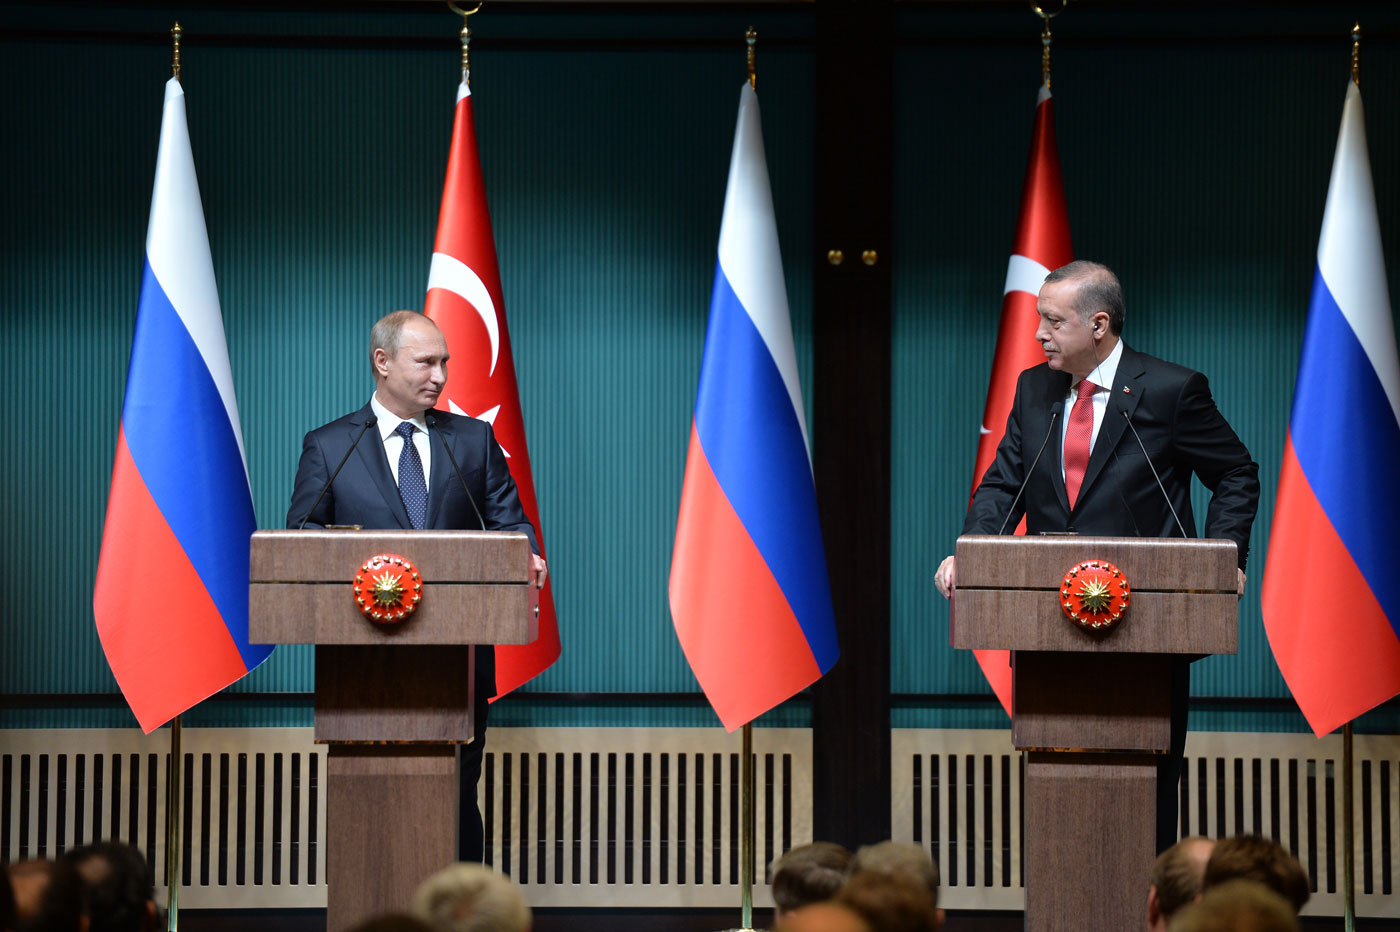 Турция готова нанести сокрушительный удар по России, однако не делает этого,- Фарух Челик